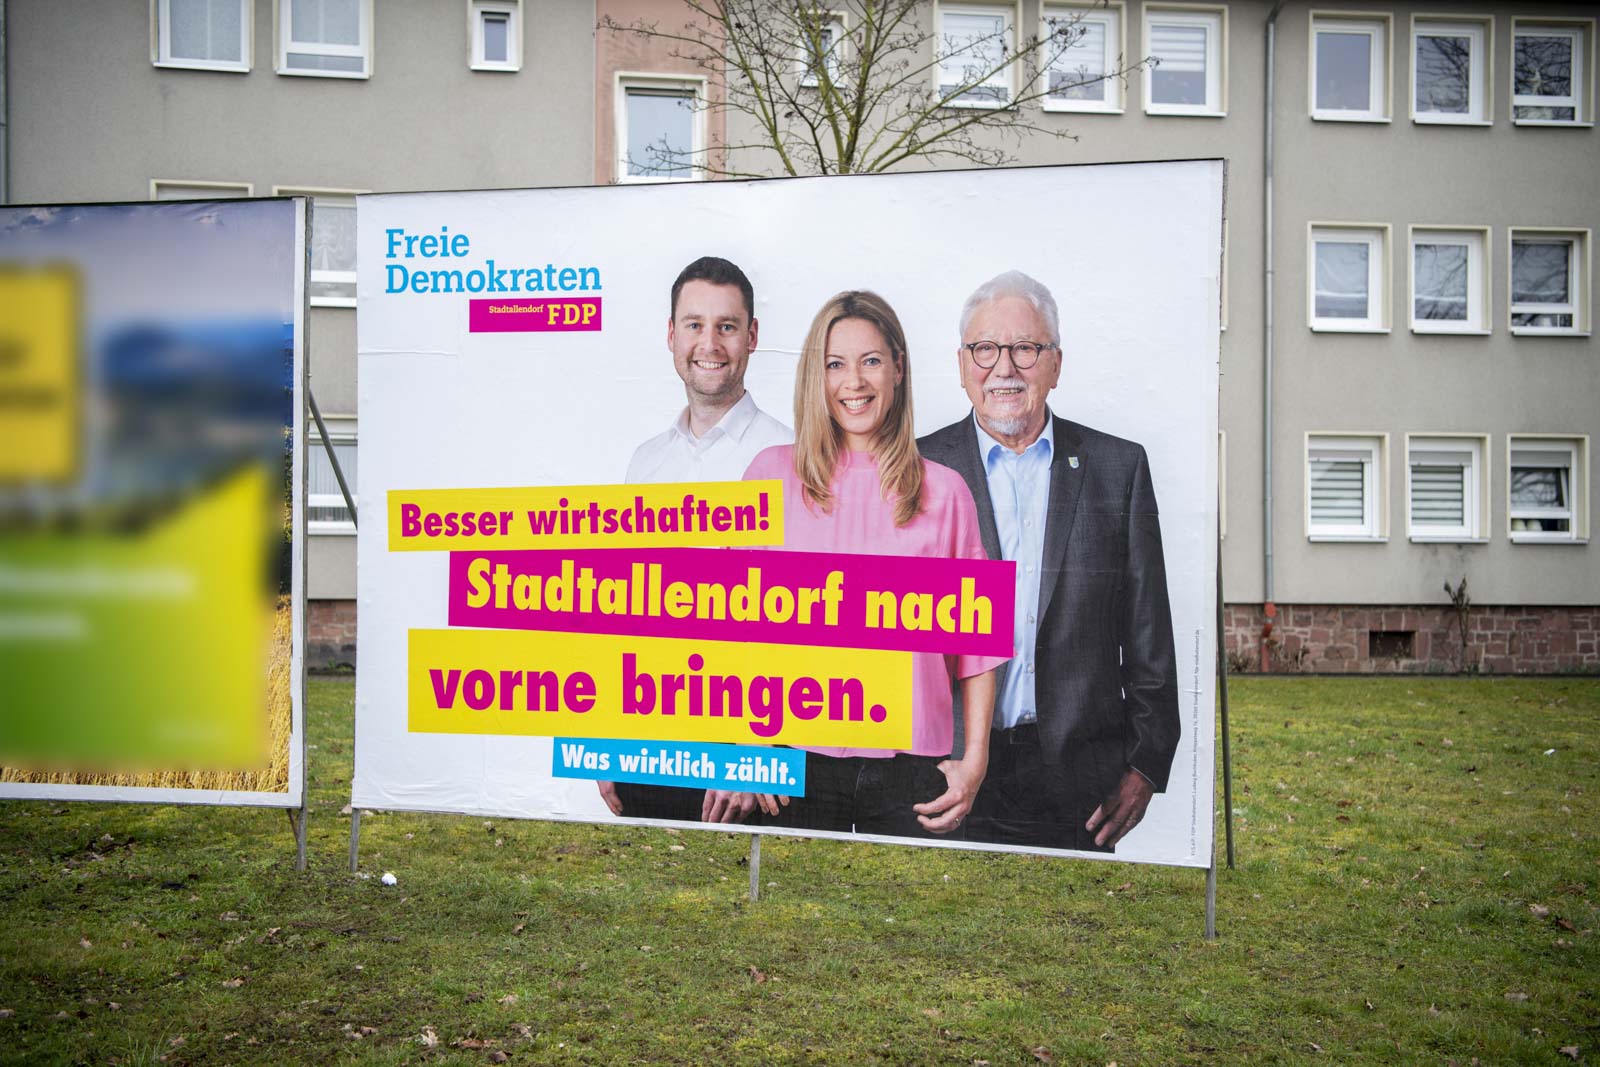 FDP Stadtallendorf tobias koch alexandra baader